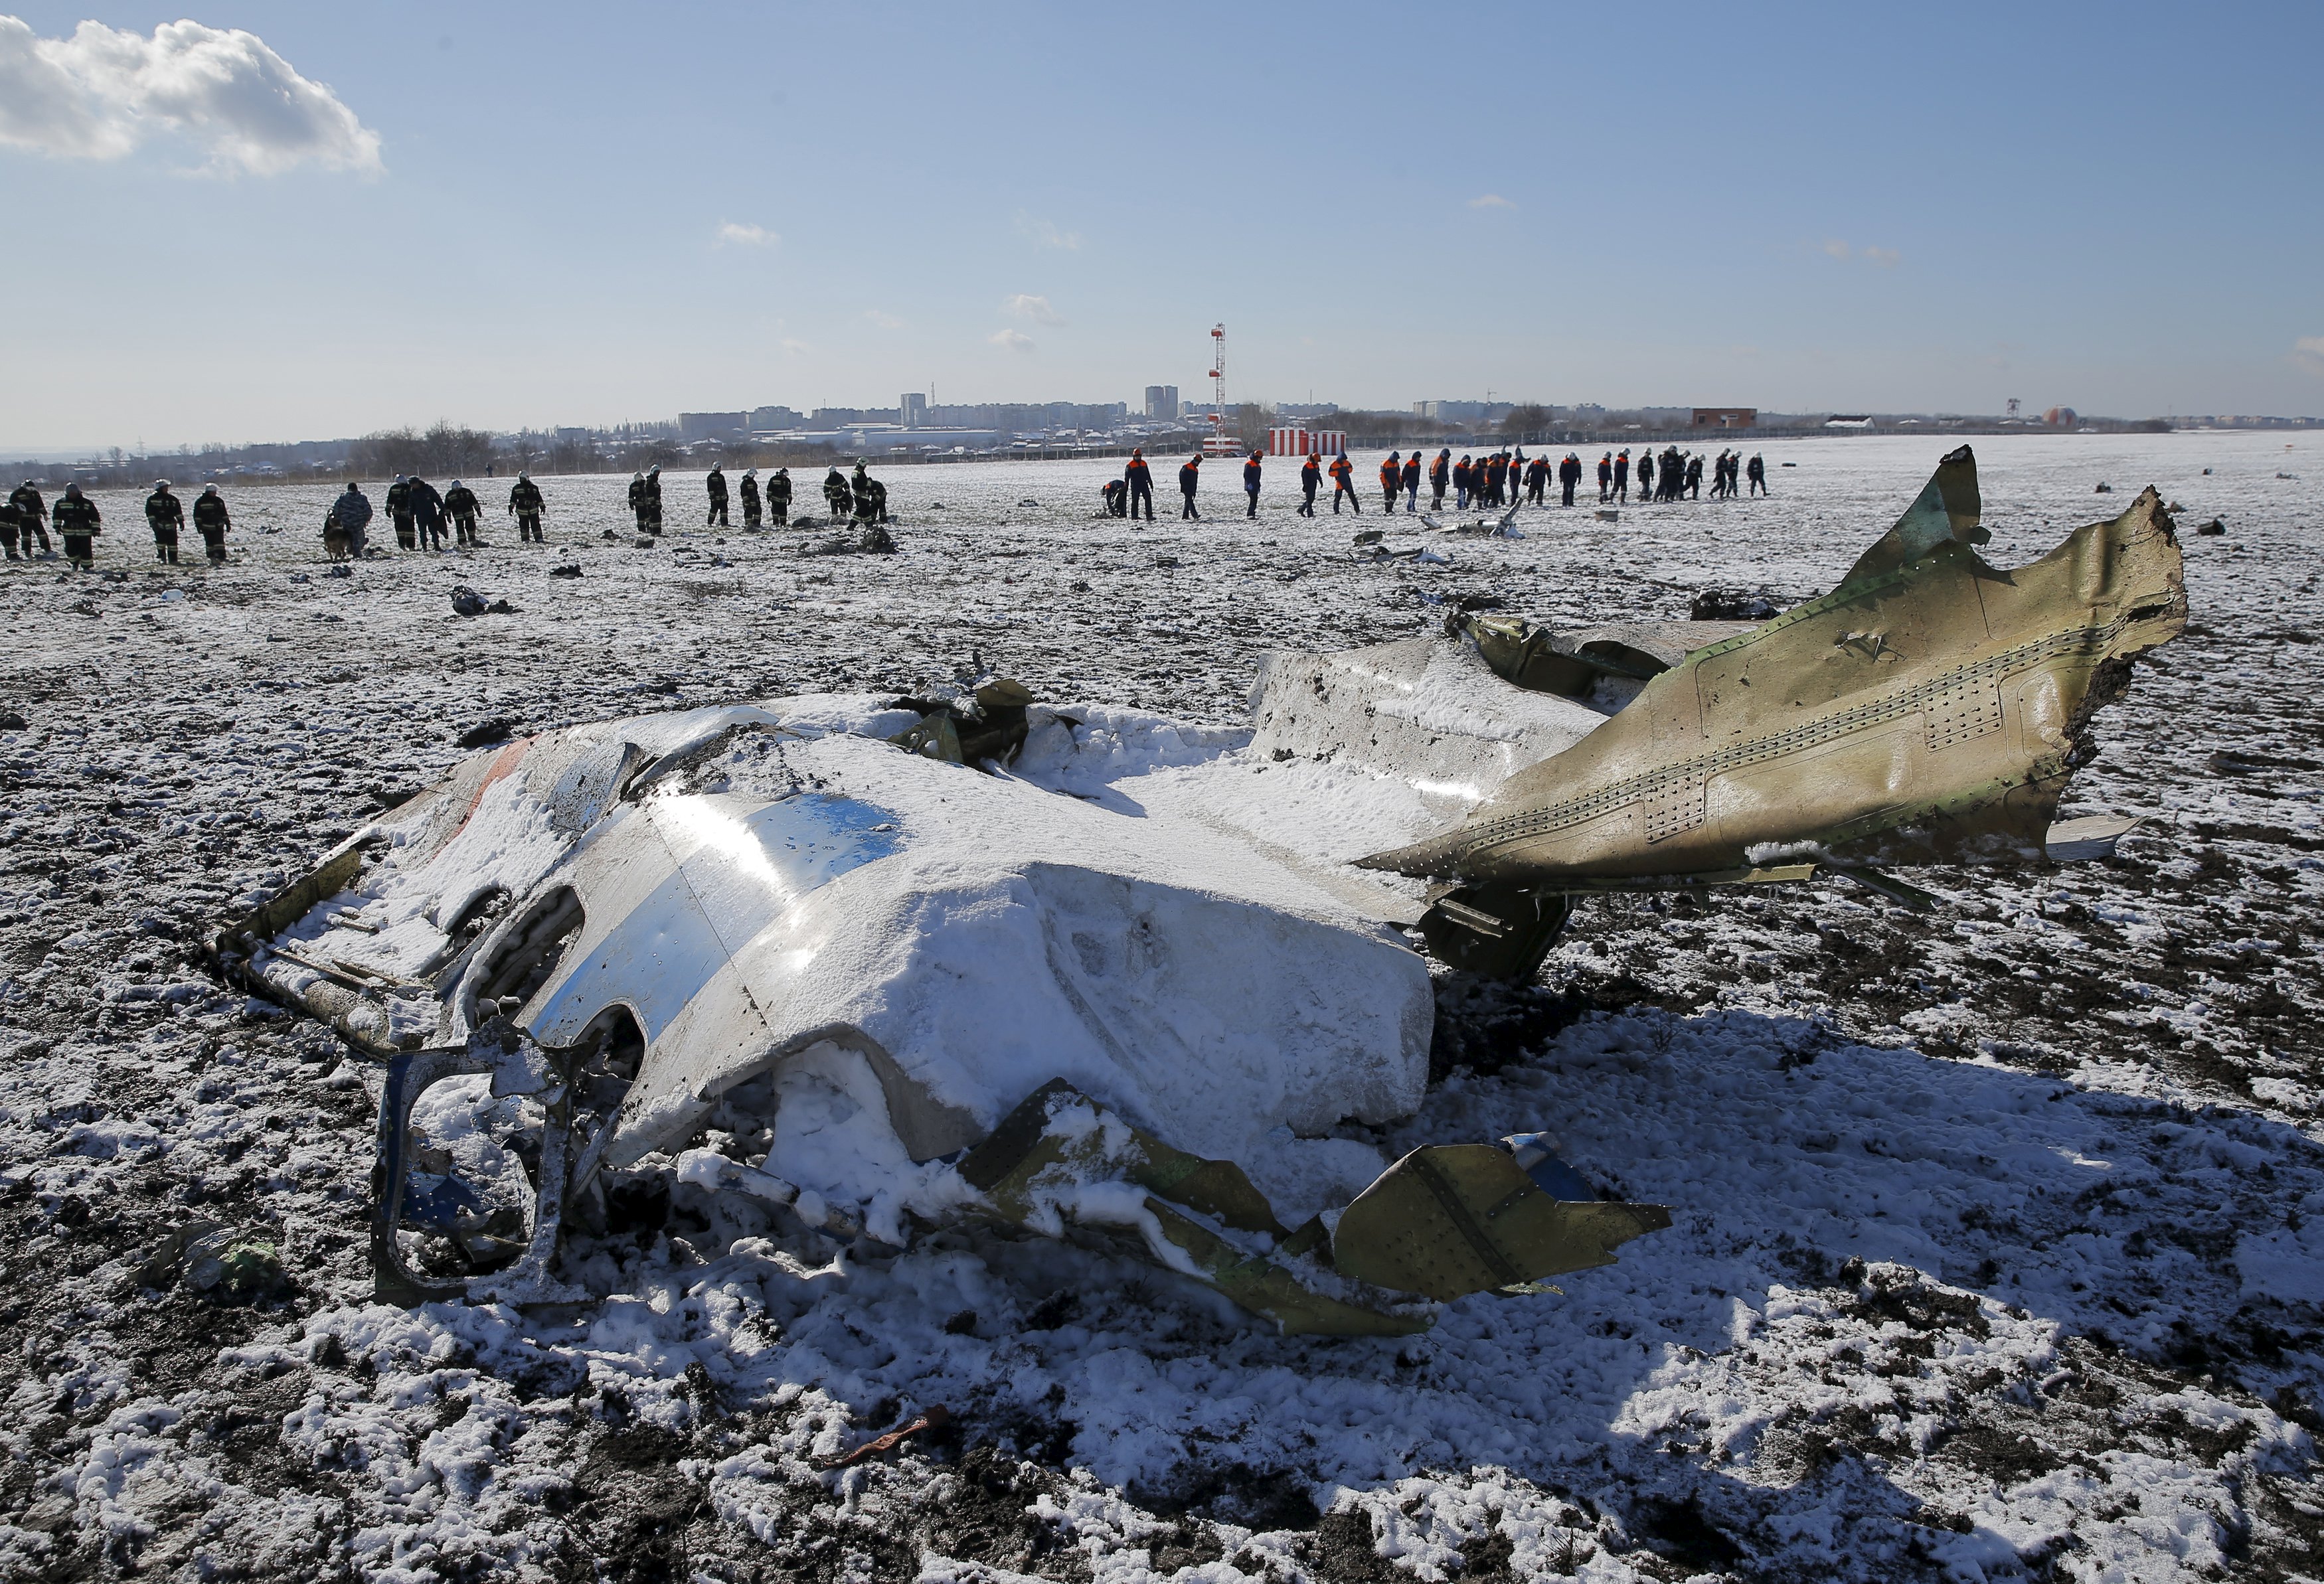 أضرار جسيمة بالصندوقين الأسودين لطائرة فلاي دبي المنكوبة في روسيا